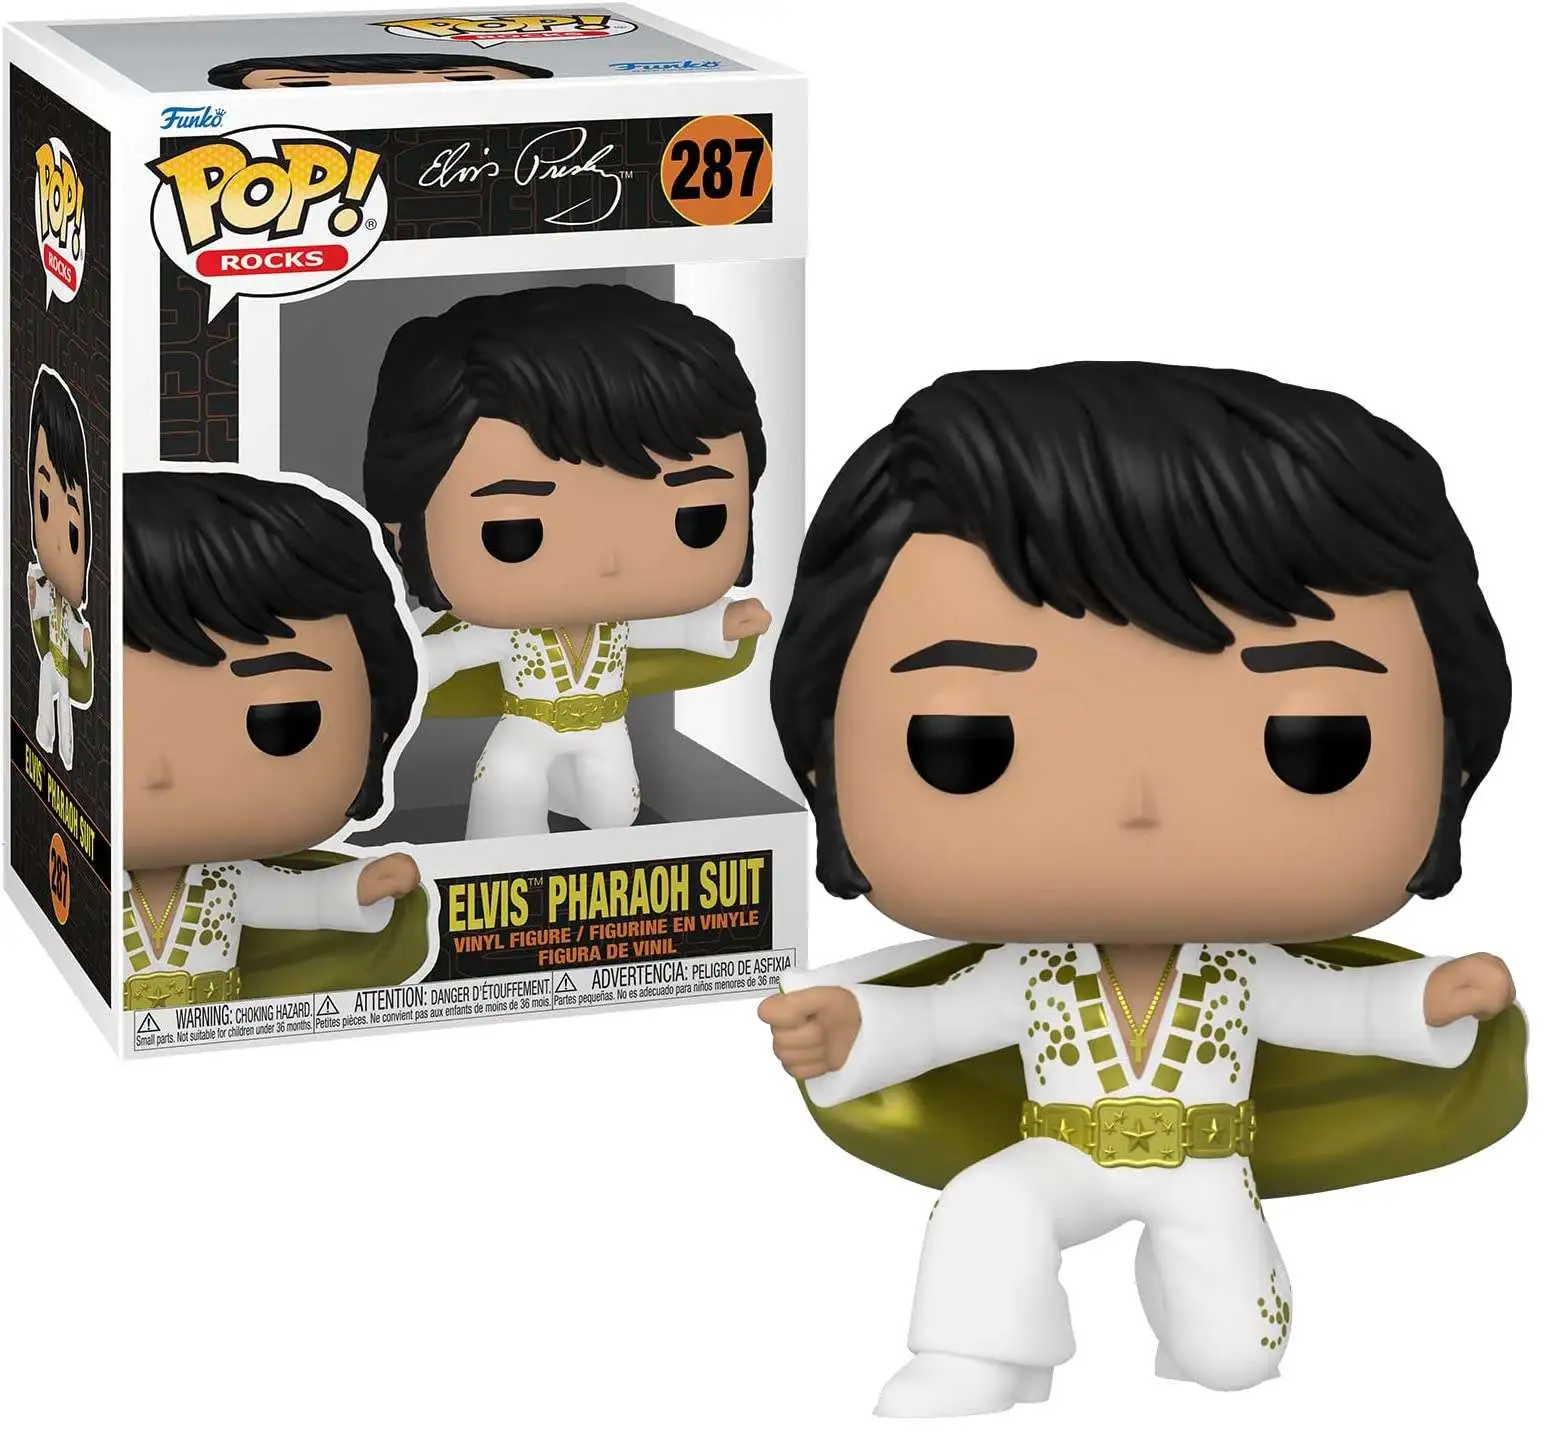 Buy Pop! Elvis Pharaoh Suit at Funko.